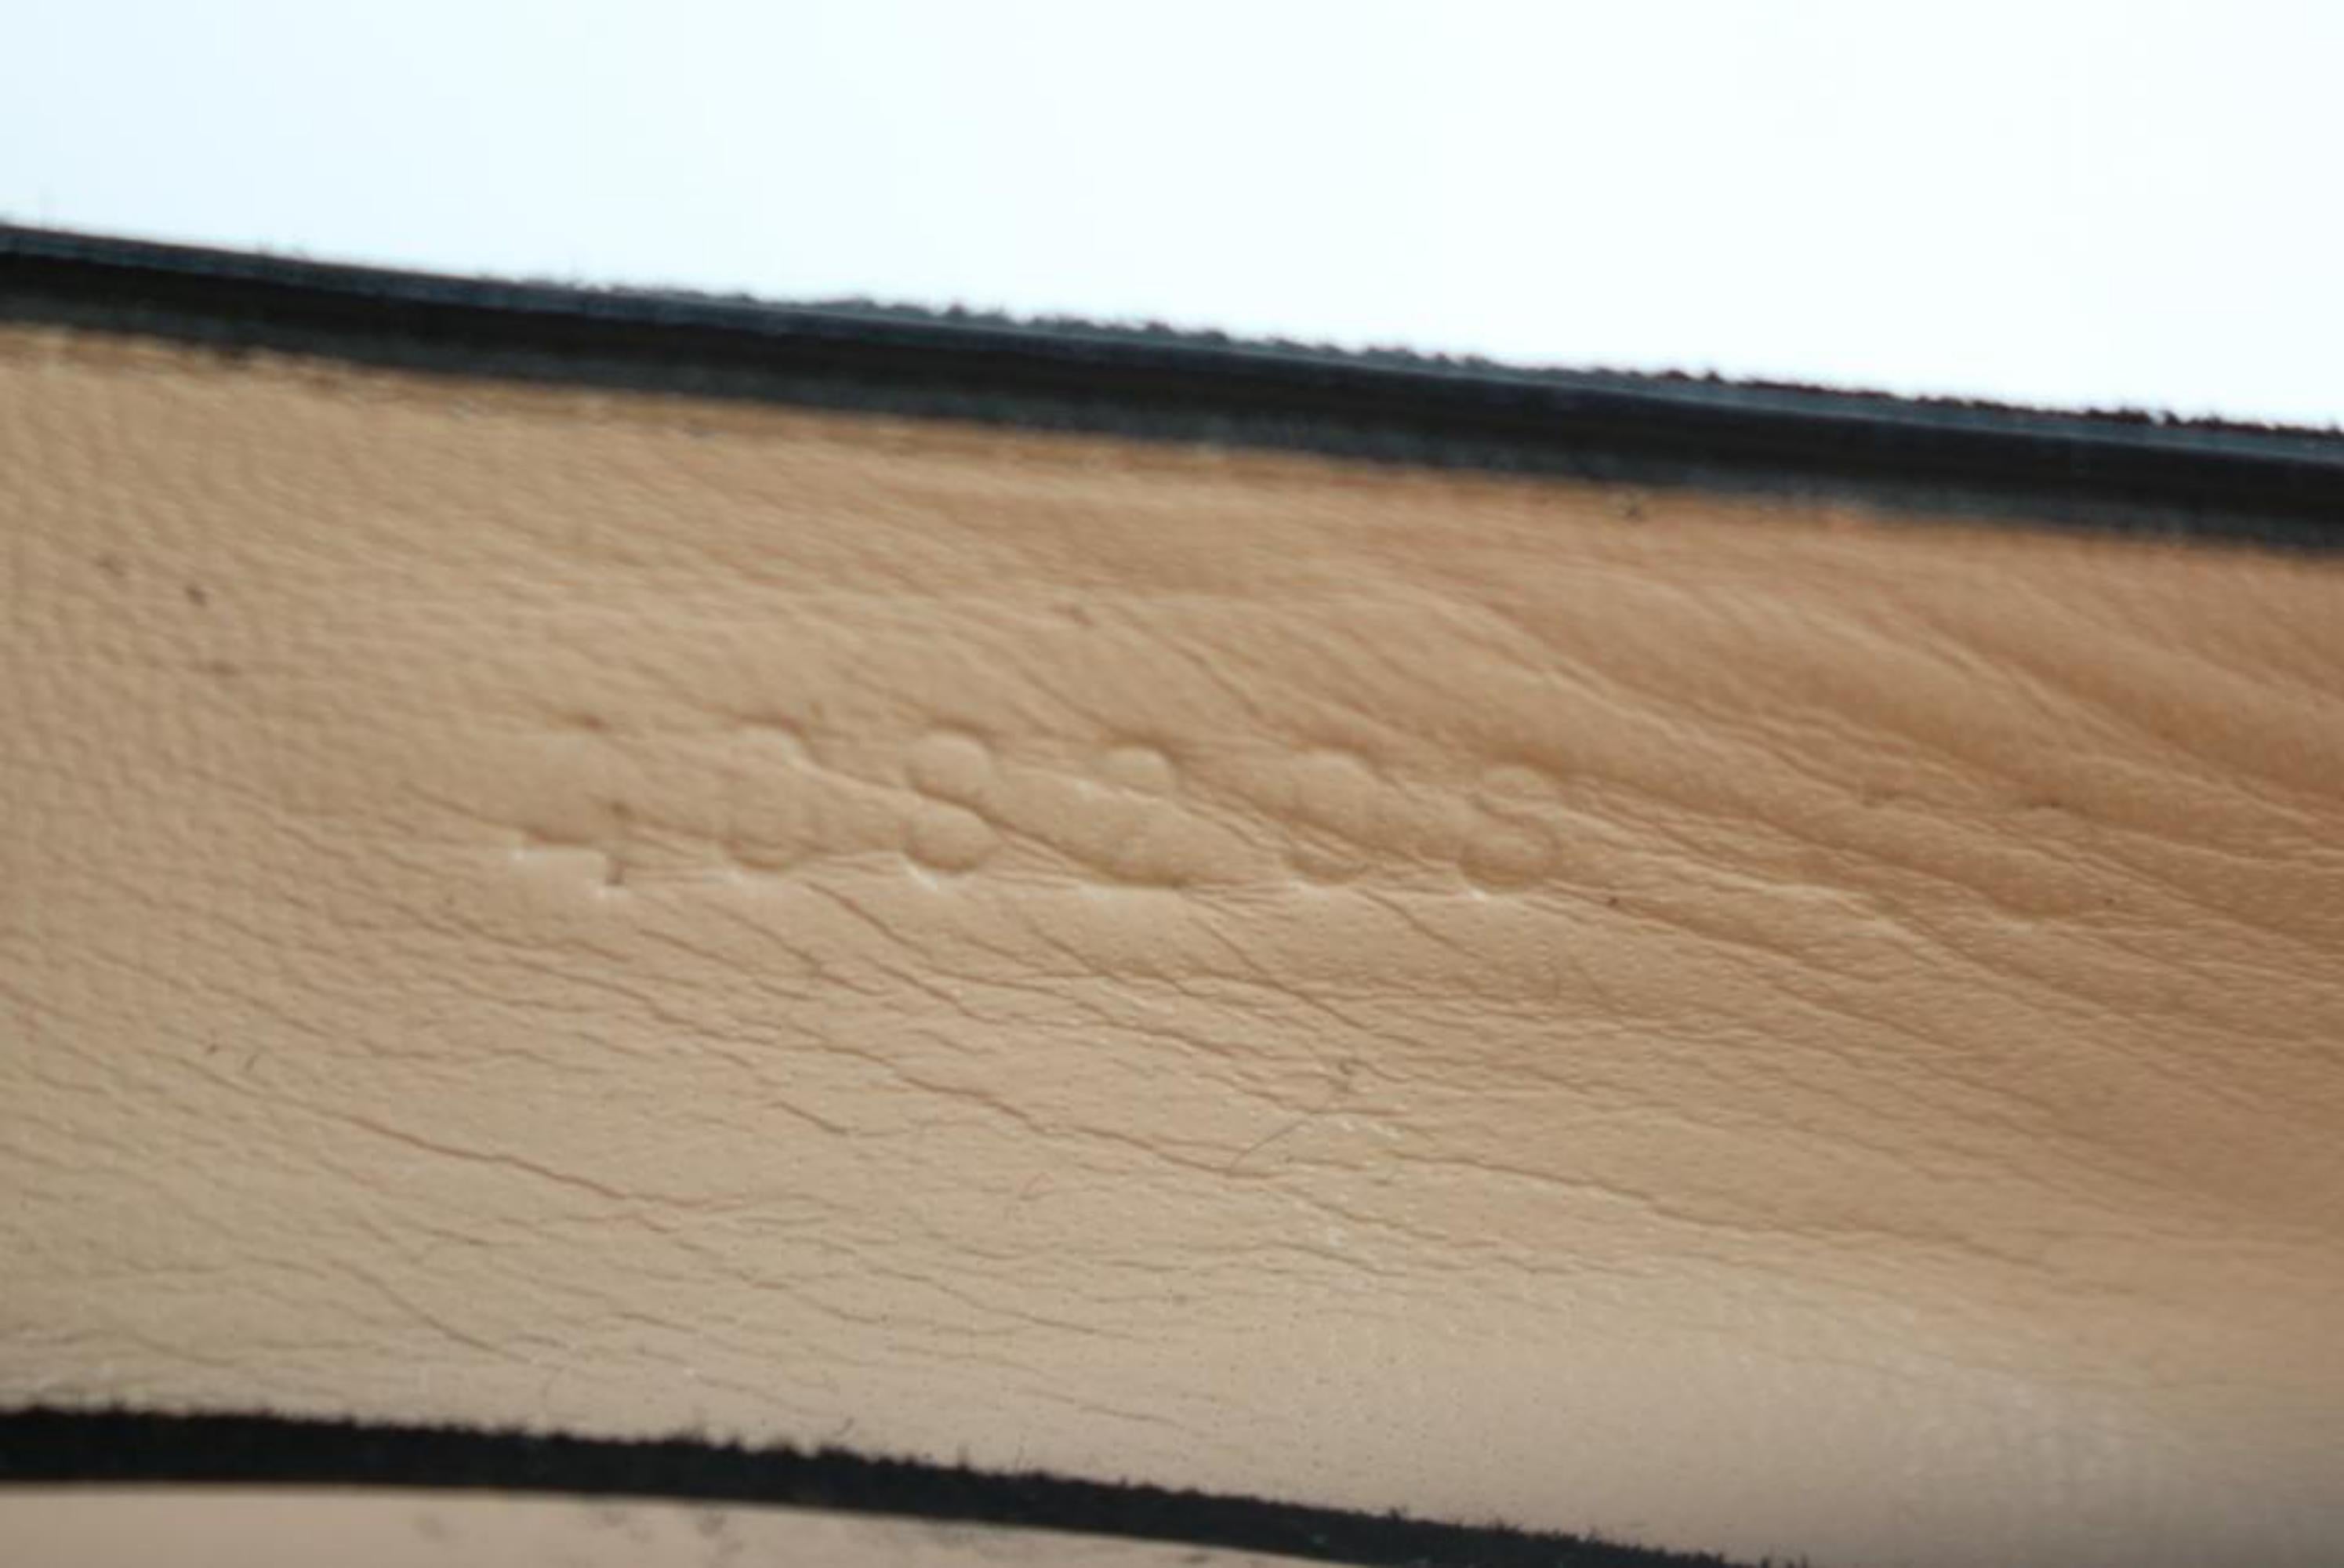 Gucci Black Marmont Fringe Suede 55mm Loafer 15ge0104 Flats For Sale 4